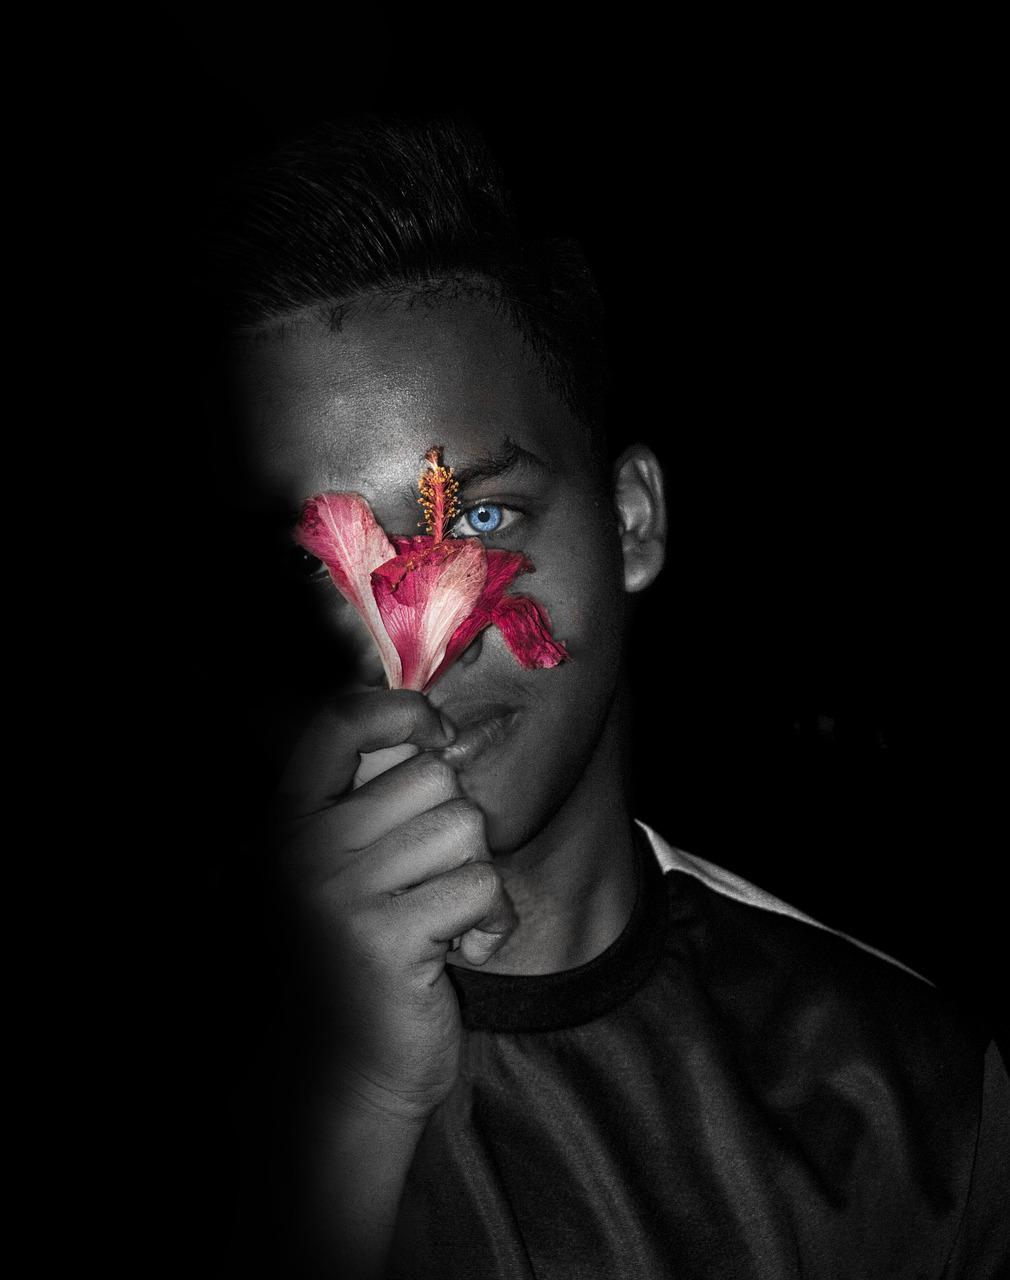 Portrait en noir et blanc d'un jeune homme dans l'obscurité qui tient contre une moitié de son visage une fleur. Le pistil et les pétales épousent d'une caresse les courbes de son visage. Seuls la fleur et l'oeil de l'homme sont en couleur.